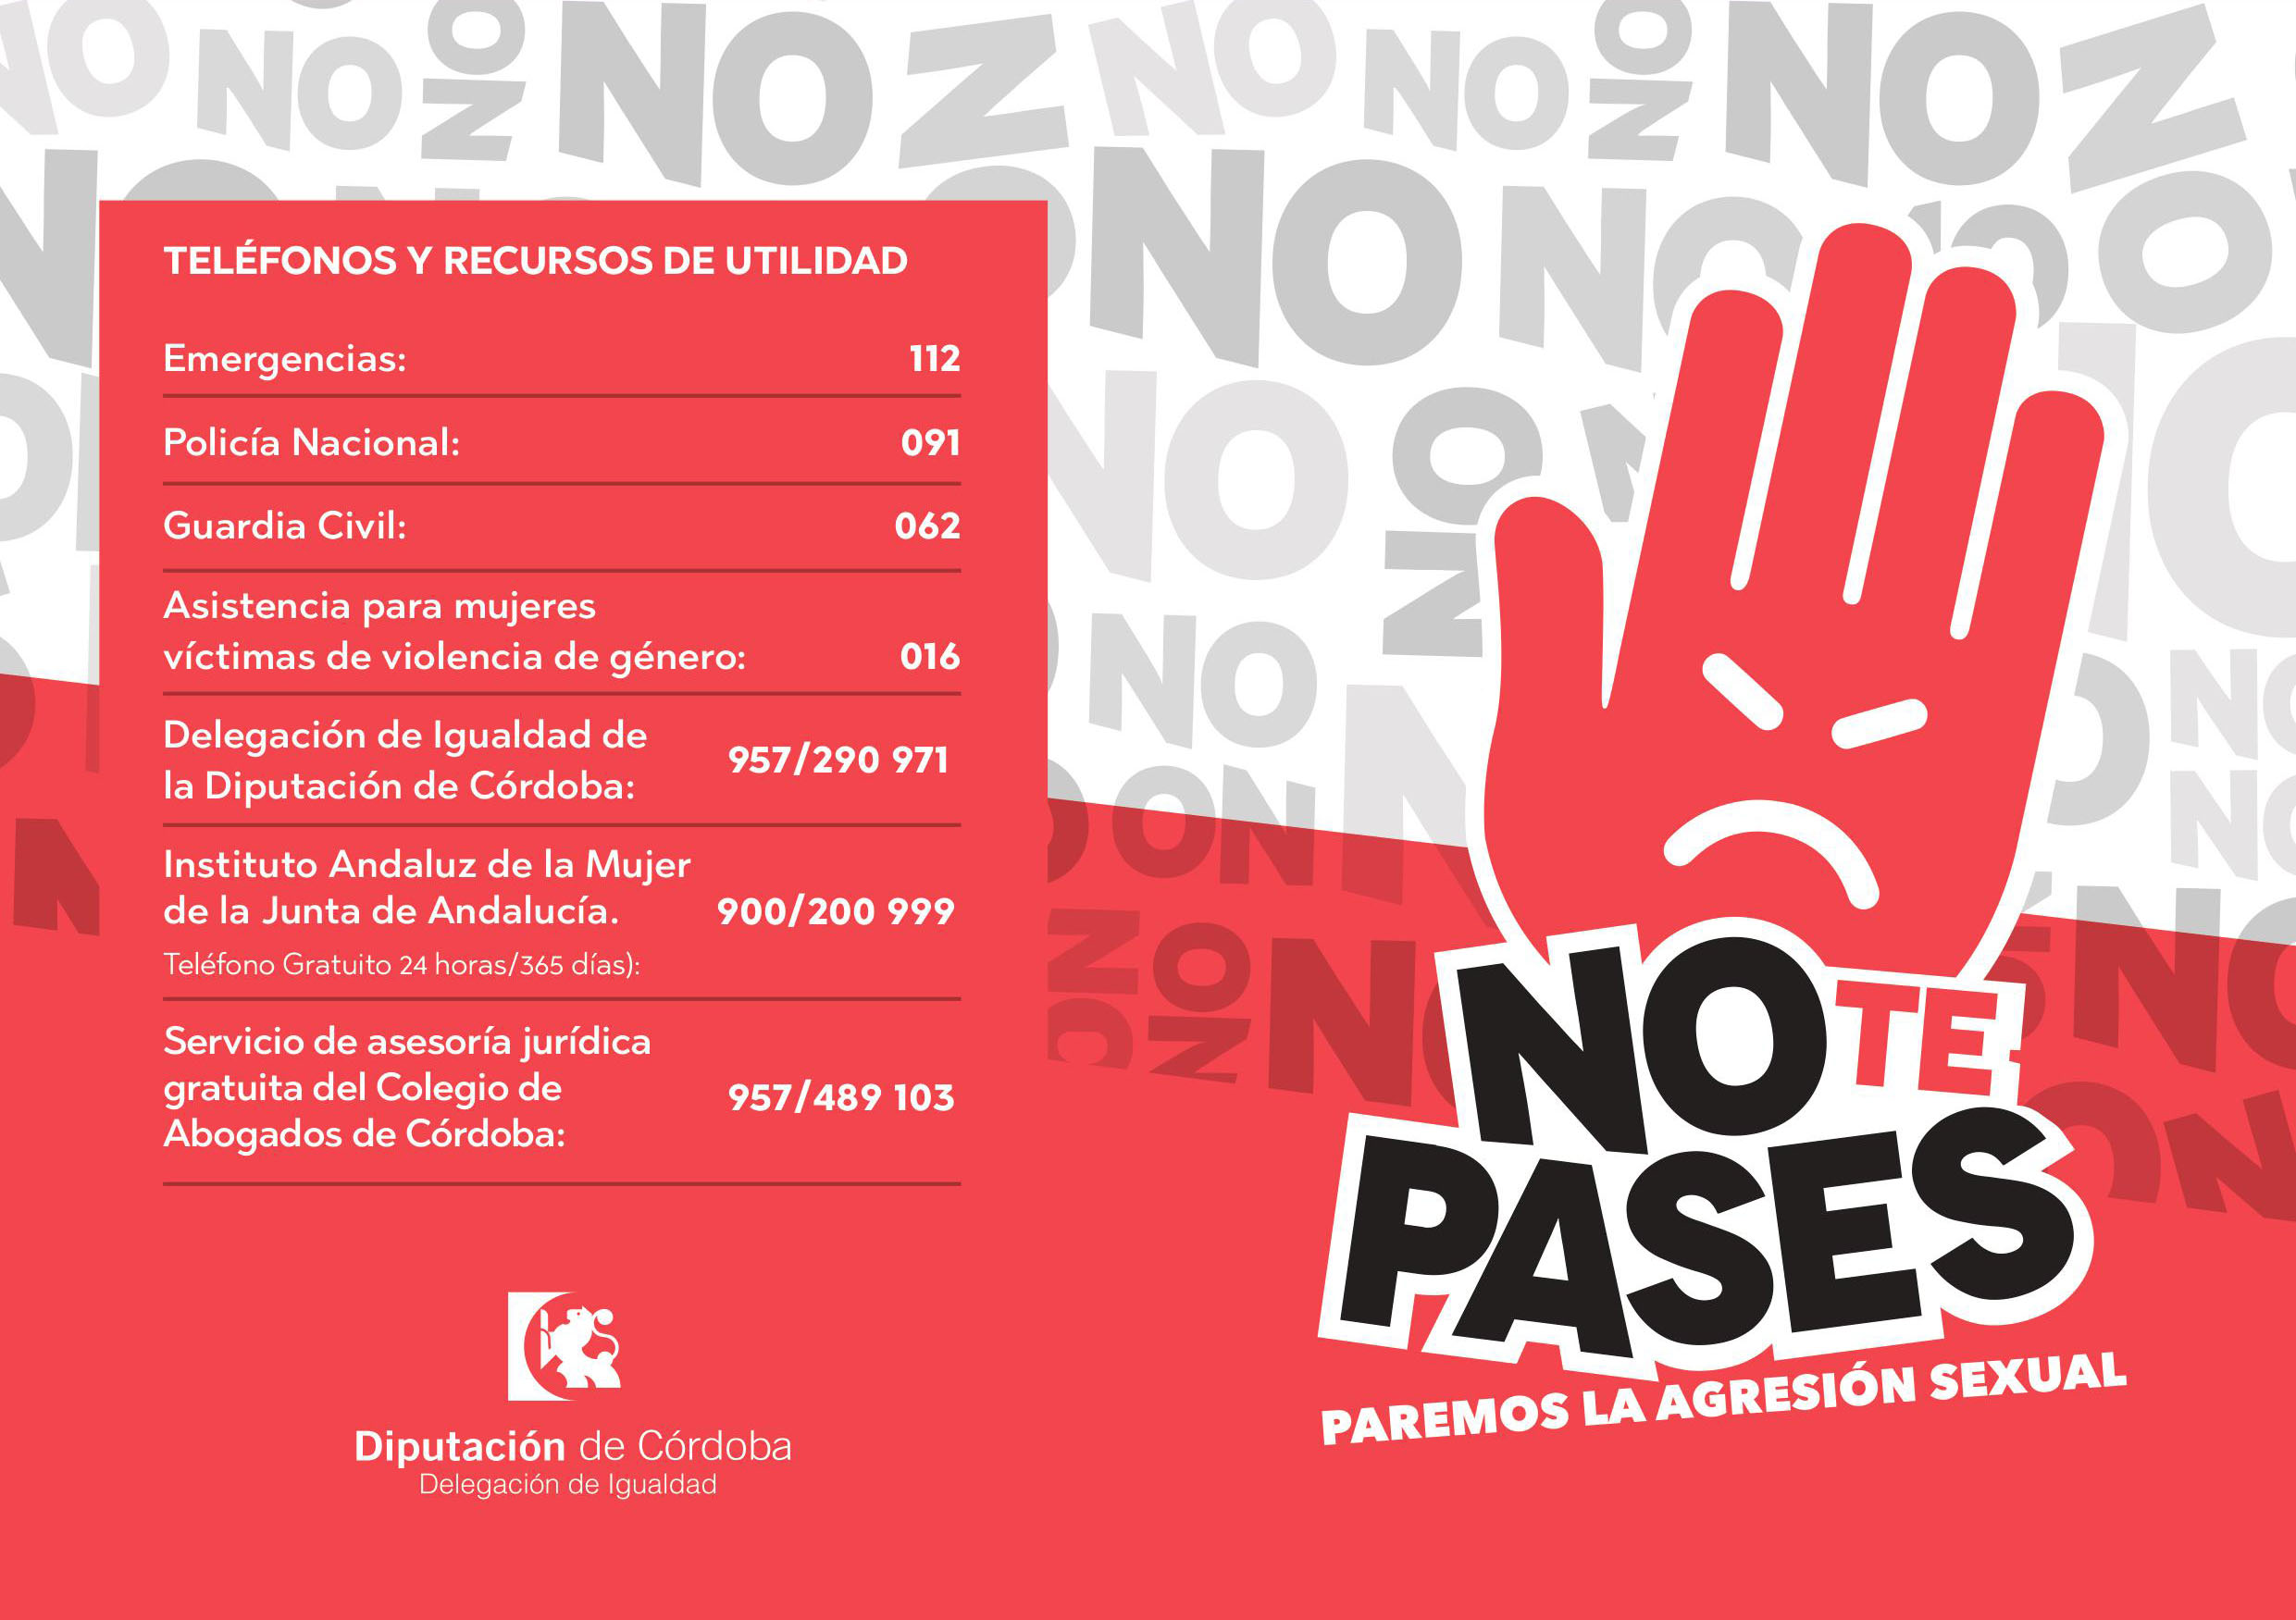 Campaña "No te pases, paremos la agresión sexual" Feria Real Fuente Palmera